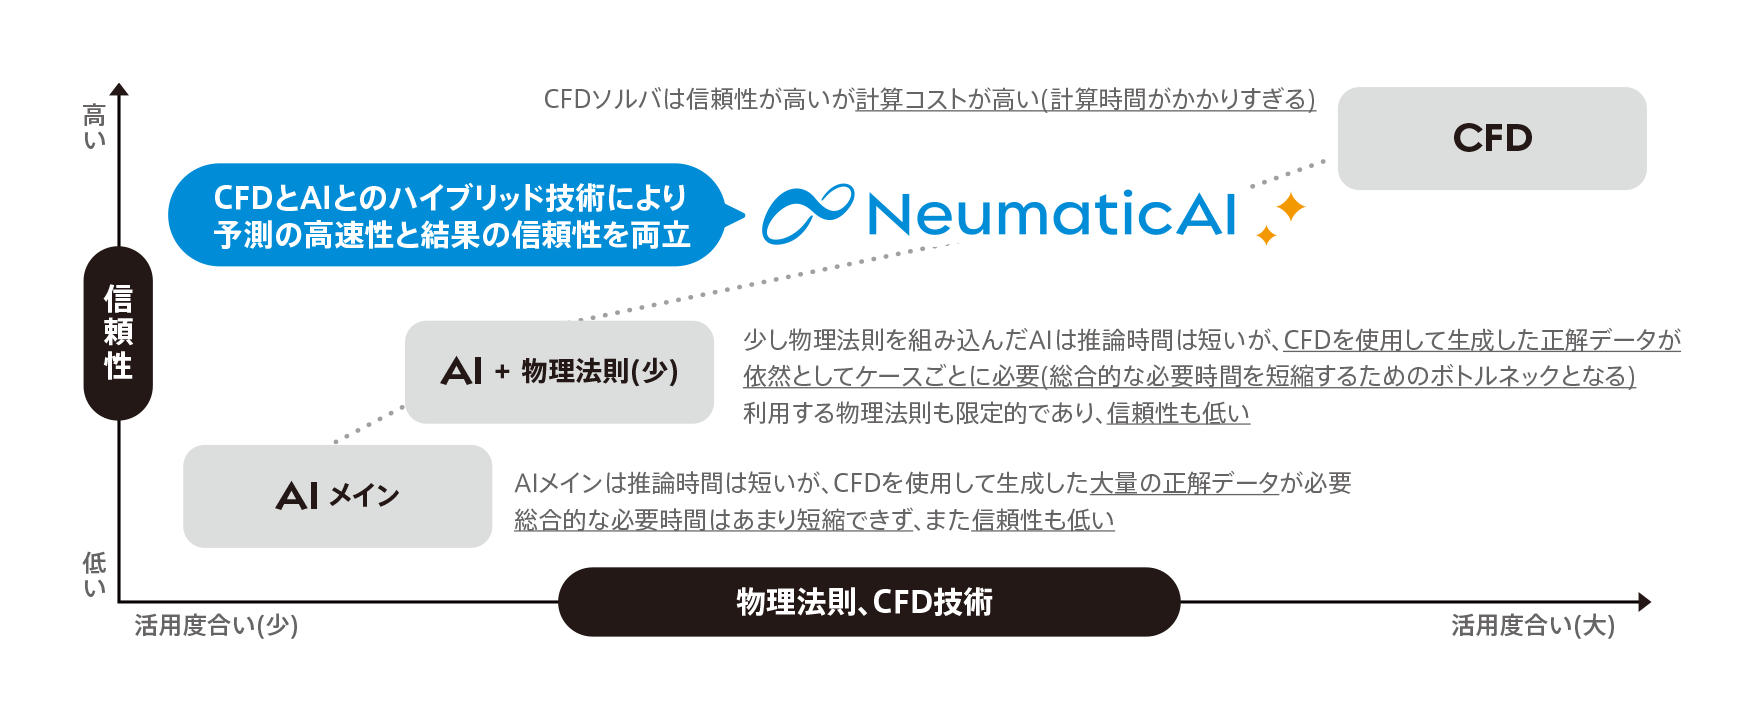 neumatic-card-2_2-1